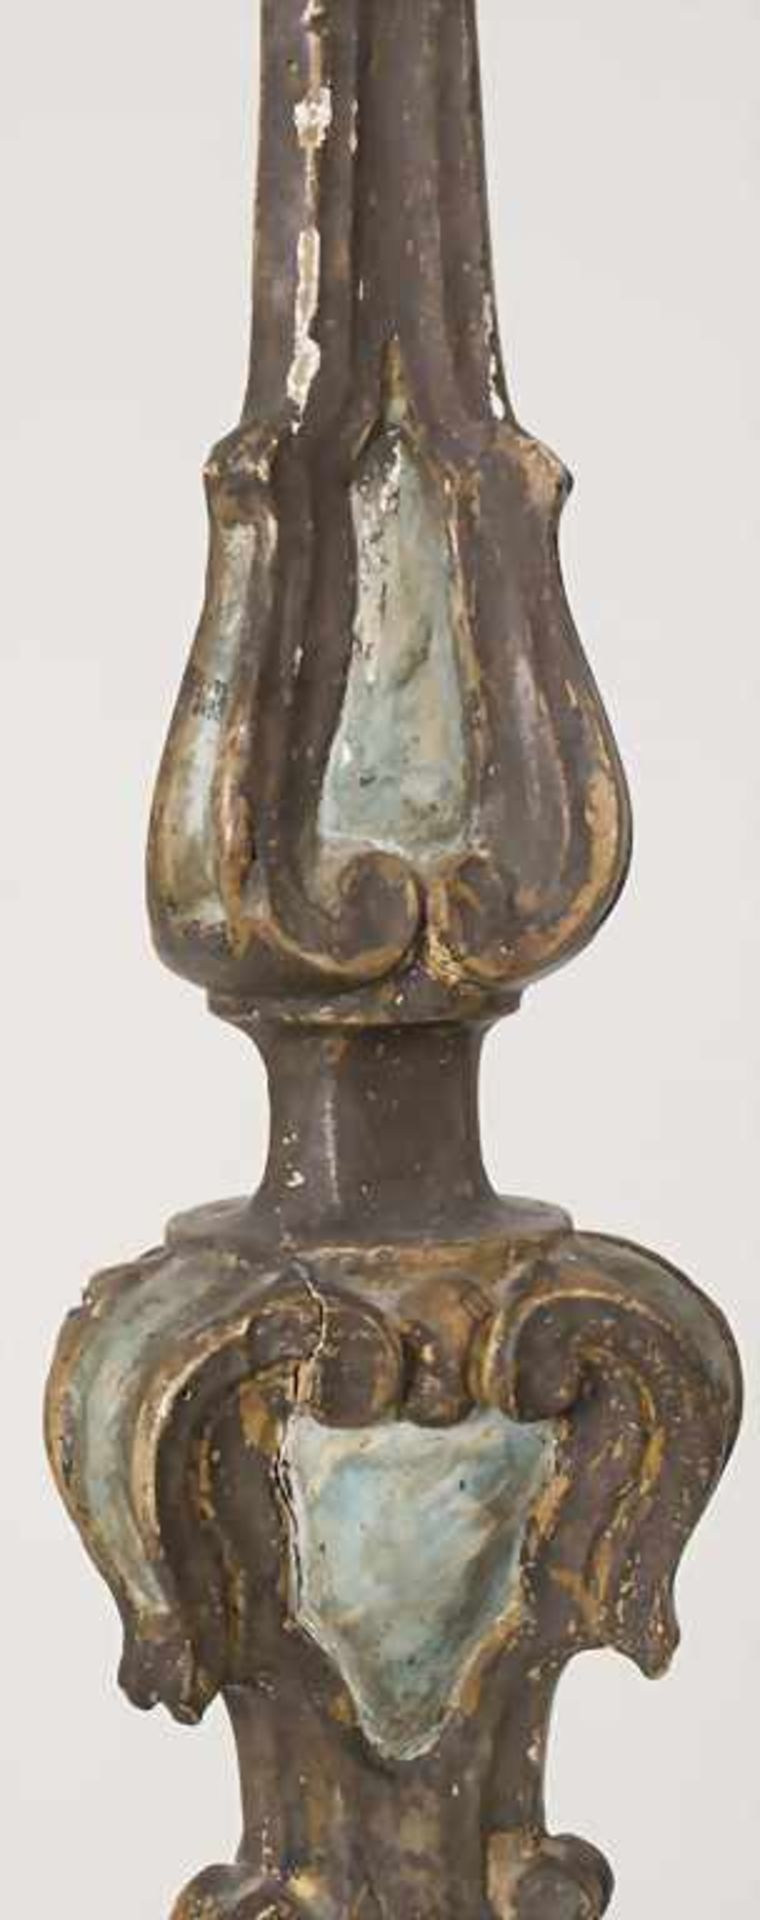 Altarleuchter / An altar candlestick, süddeutsch 18. Jh.Material: Holz, geschnitzt, farbig - Bild 13 aus 13